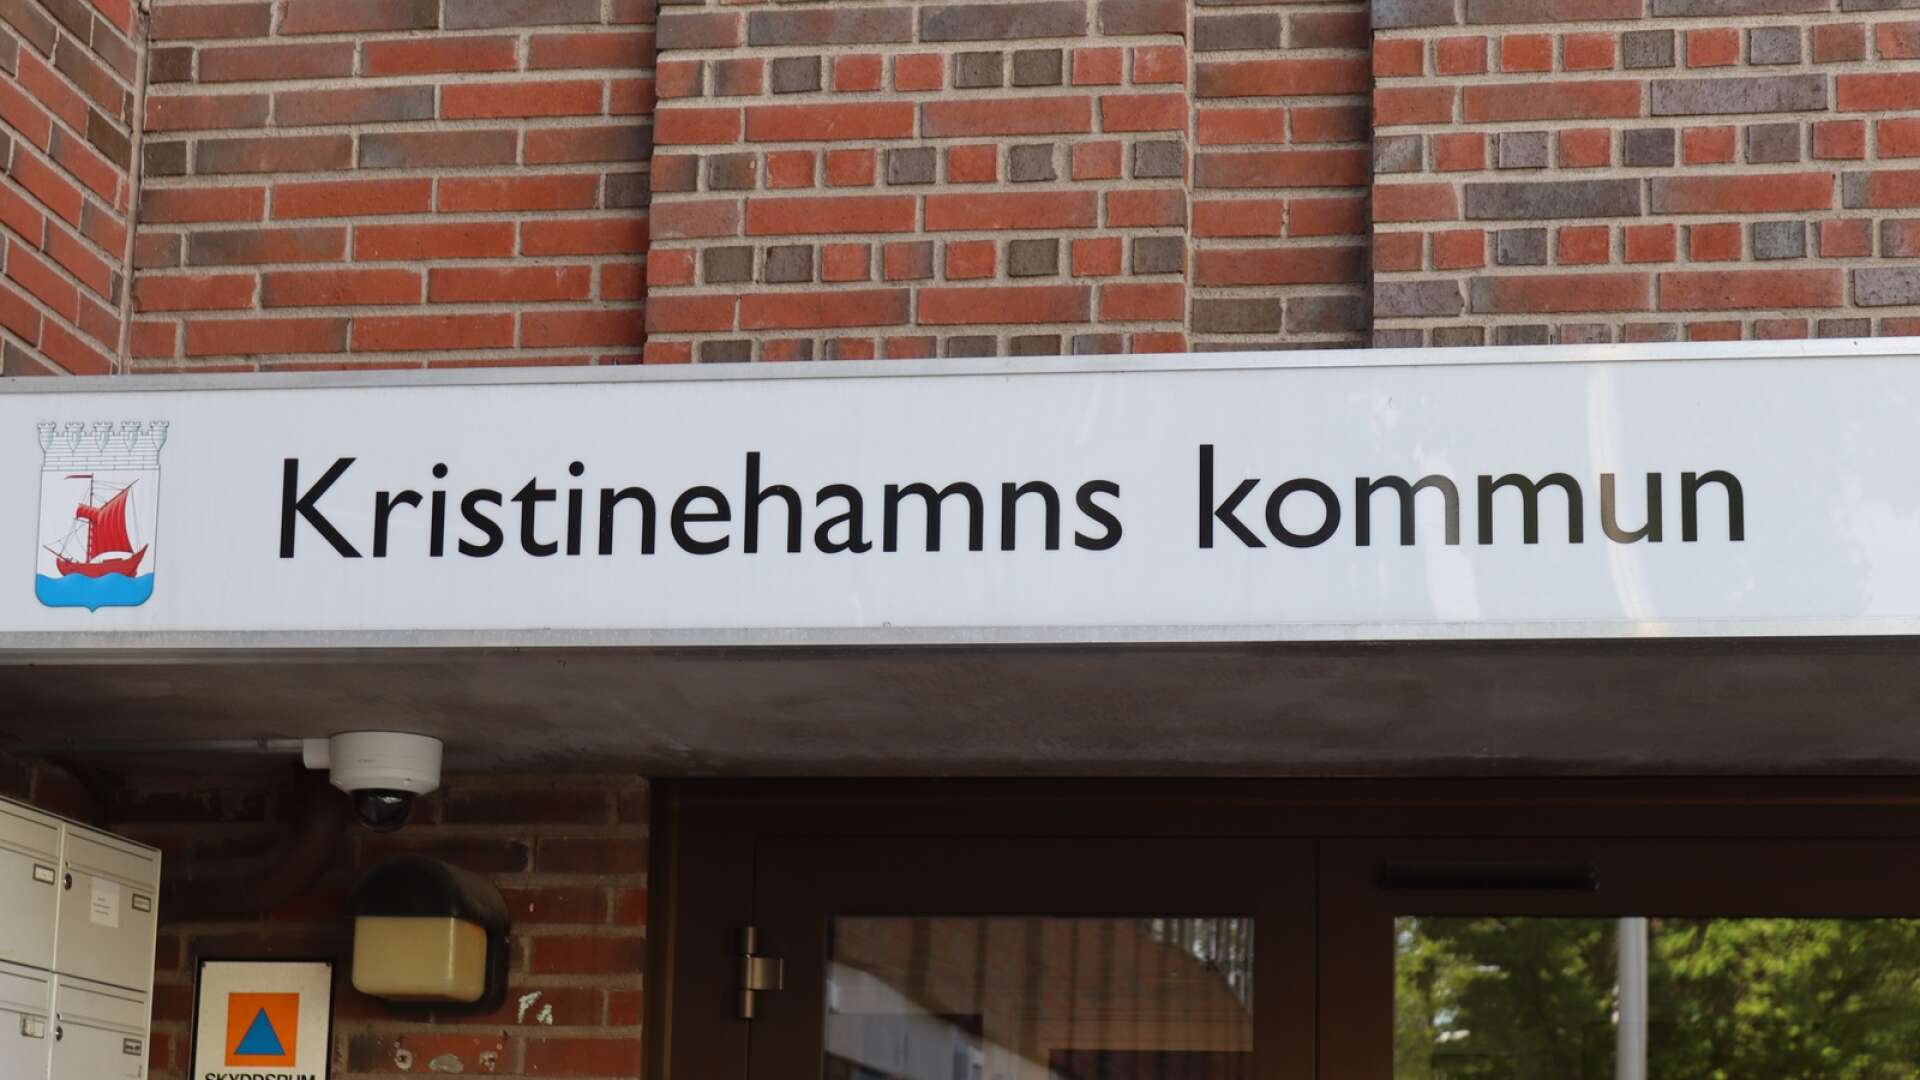 Kristinehamns kommun är ingen attraktiv arbetsgivare enligt insändarskribenten. 